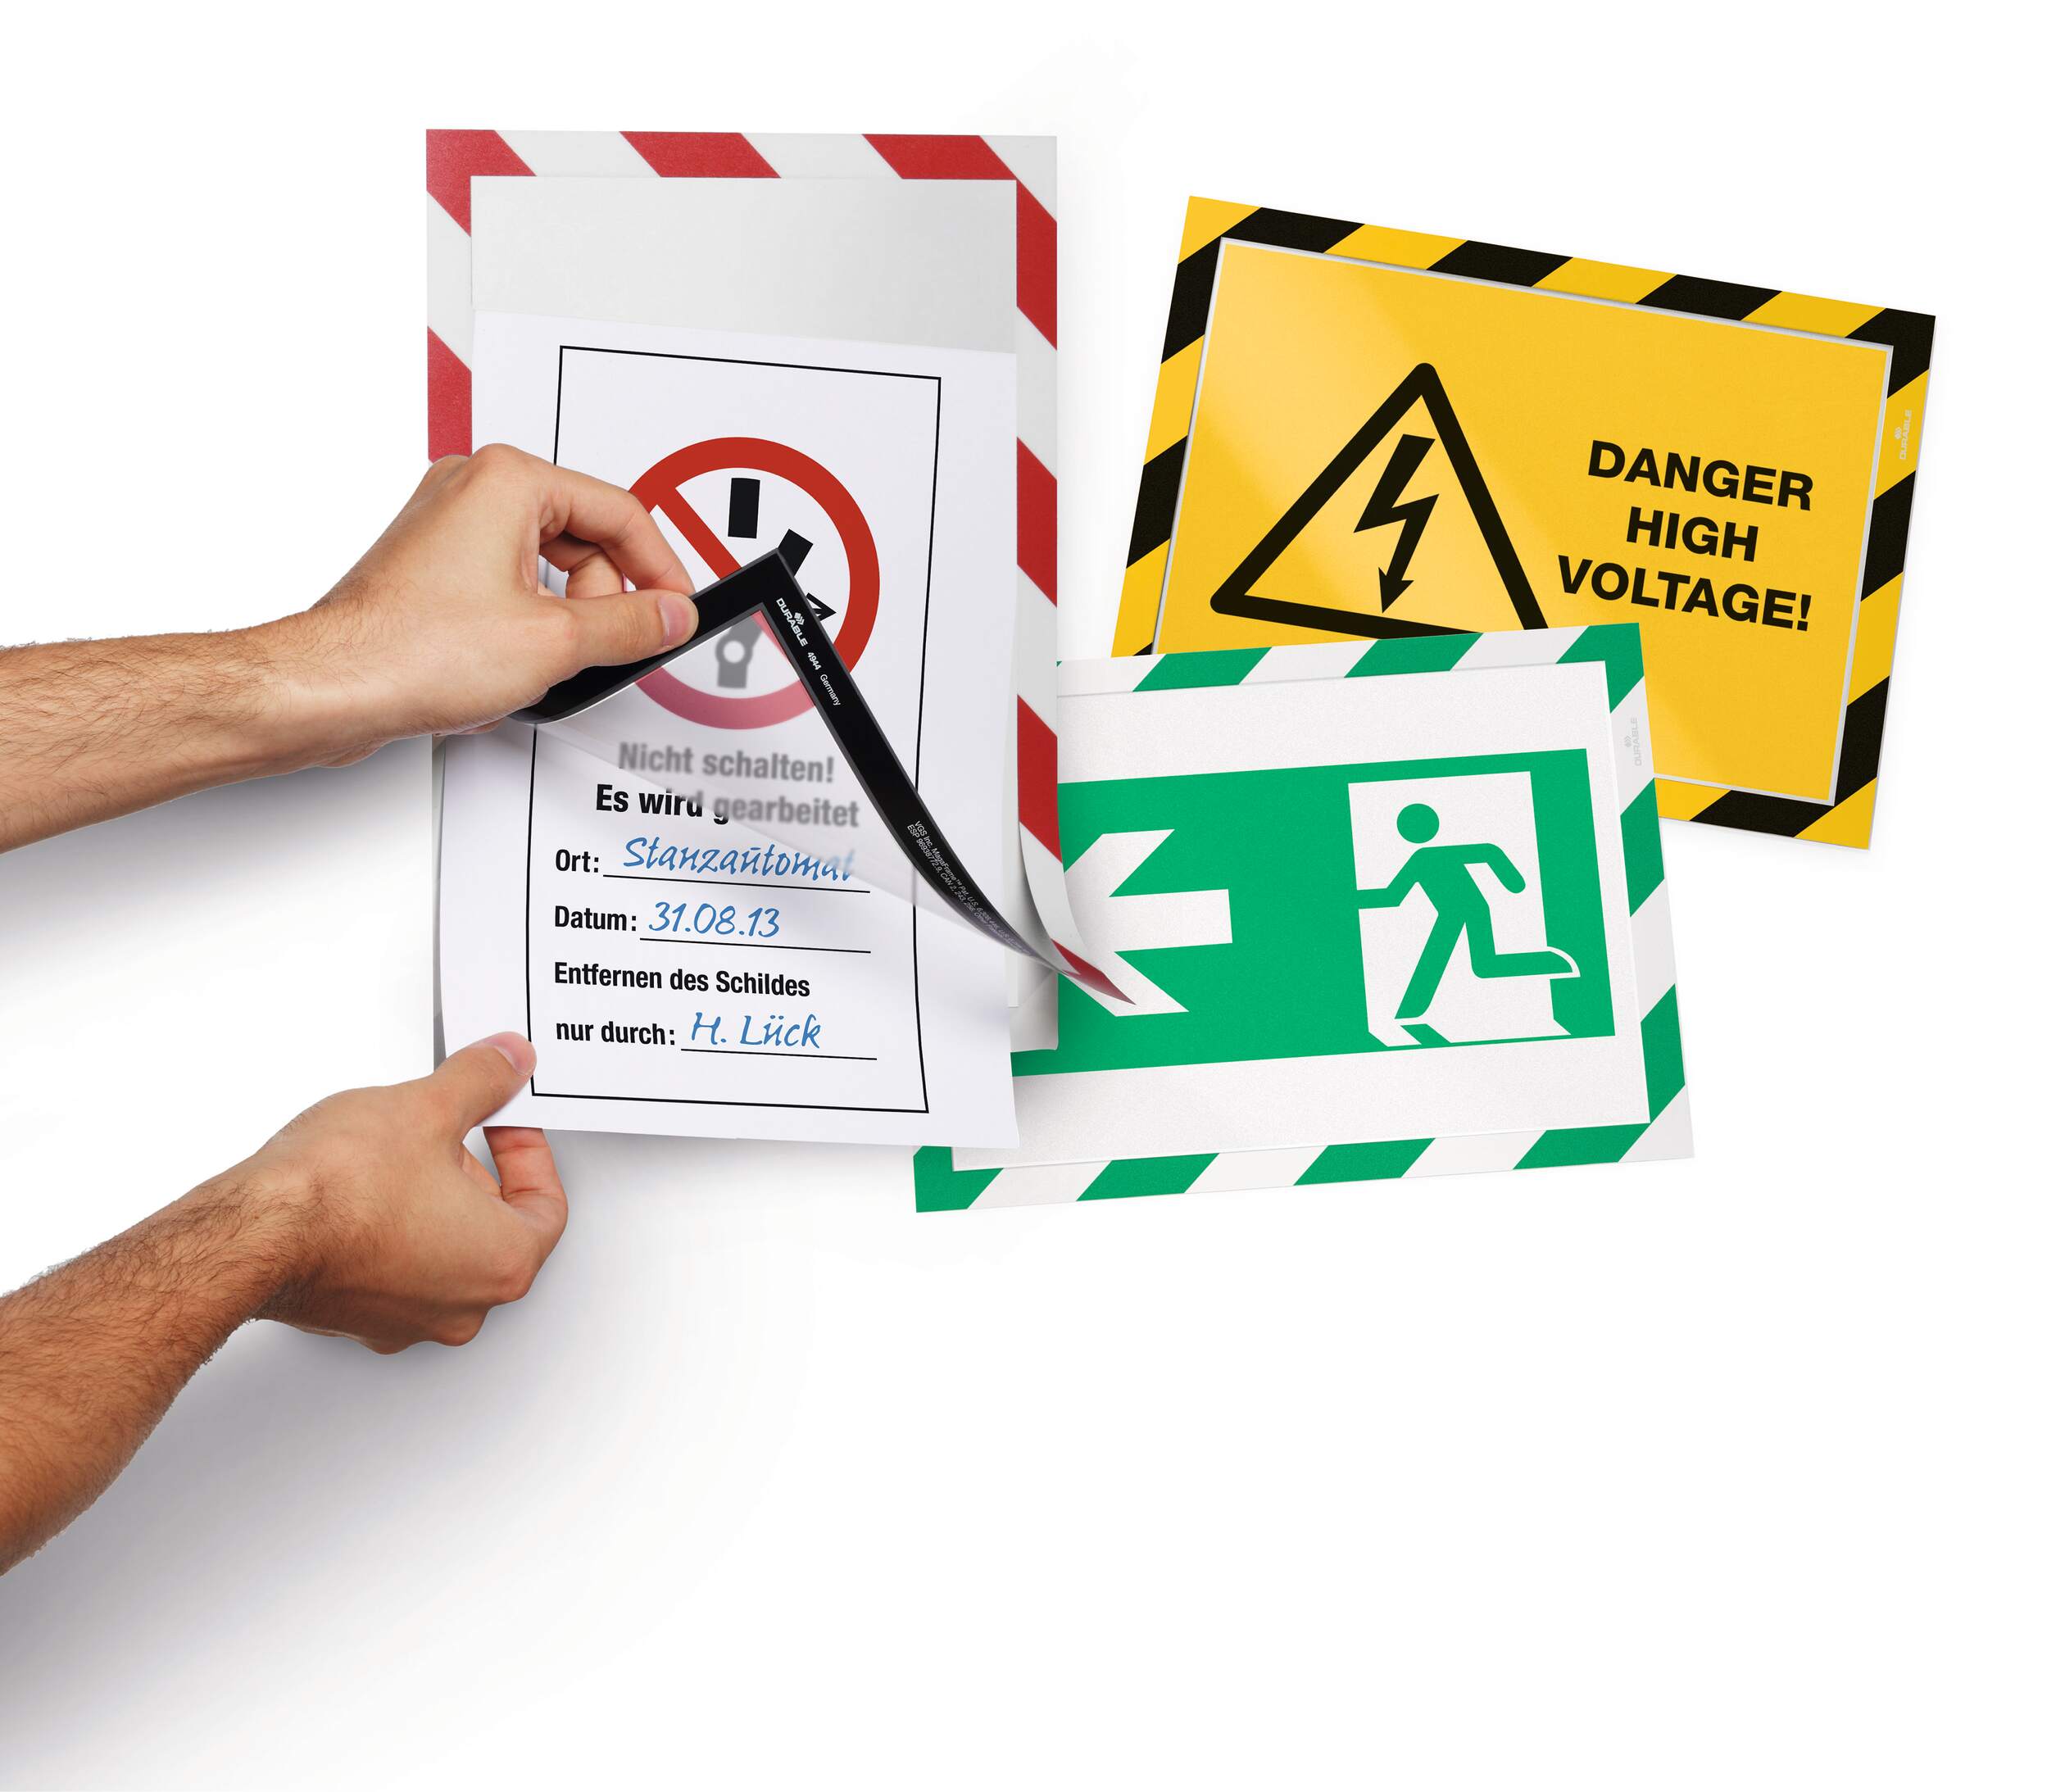 Samoprzylepne dwustronne ramki informacyjne formatu A4 w kolorach ostrzegawczych